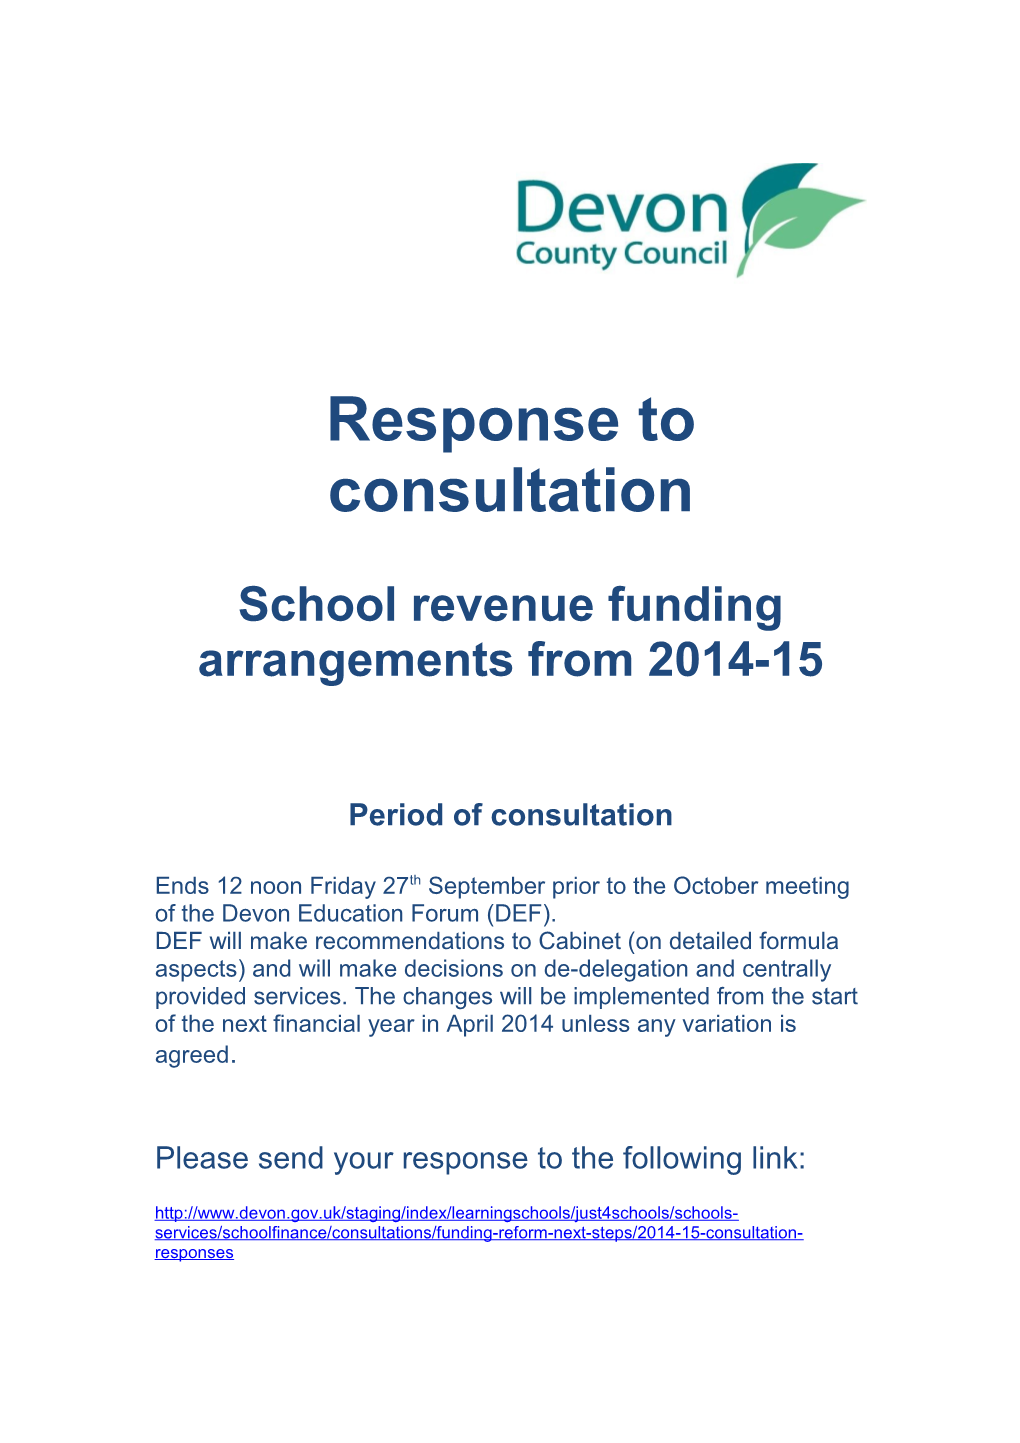 School Revenue Funding Arrangements from 2014-15